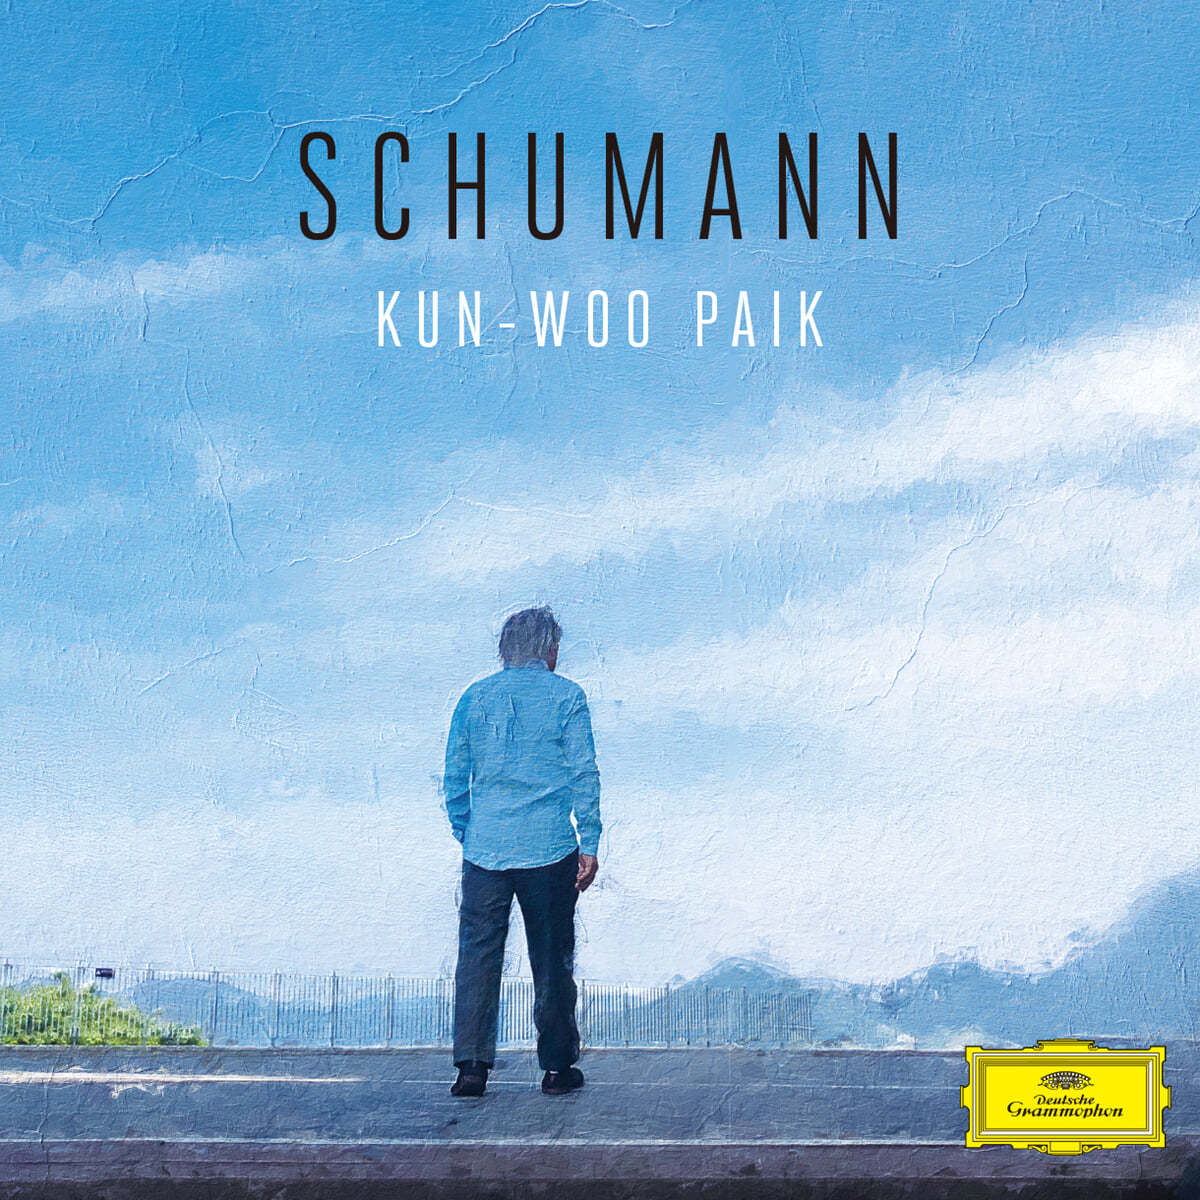 백건우 - 슈만: 피아노 작품집 (Schumann: Piano Works) [3LP]